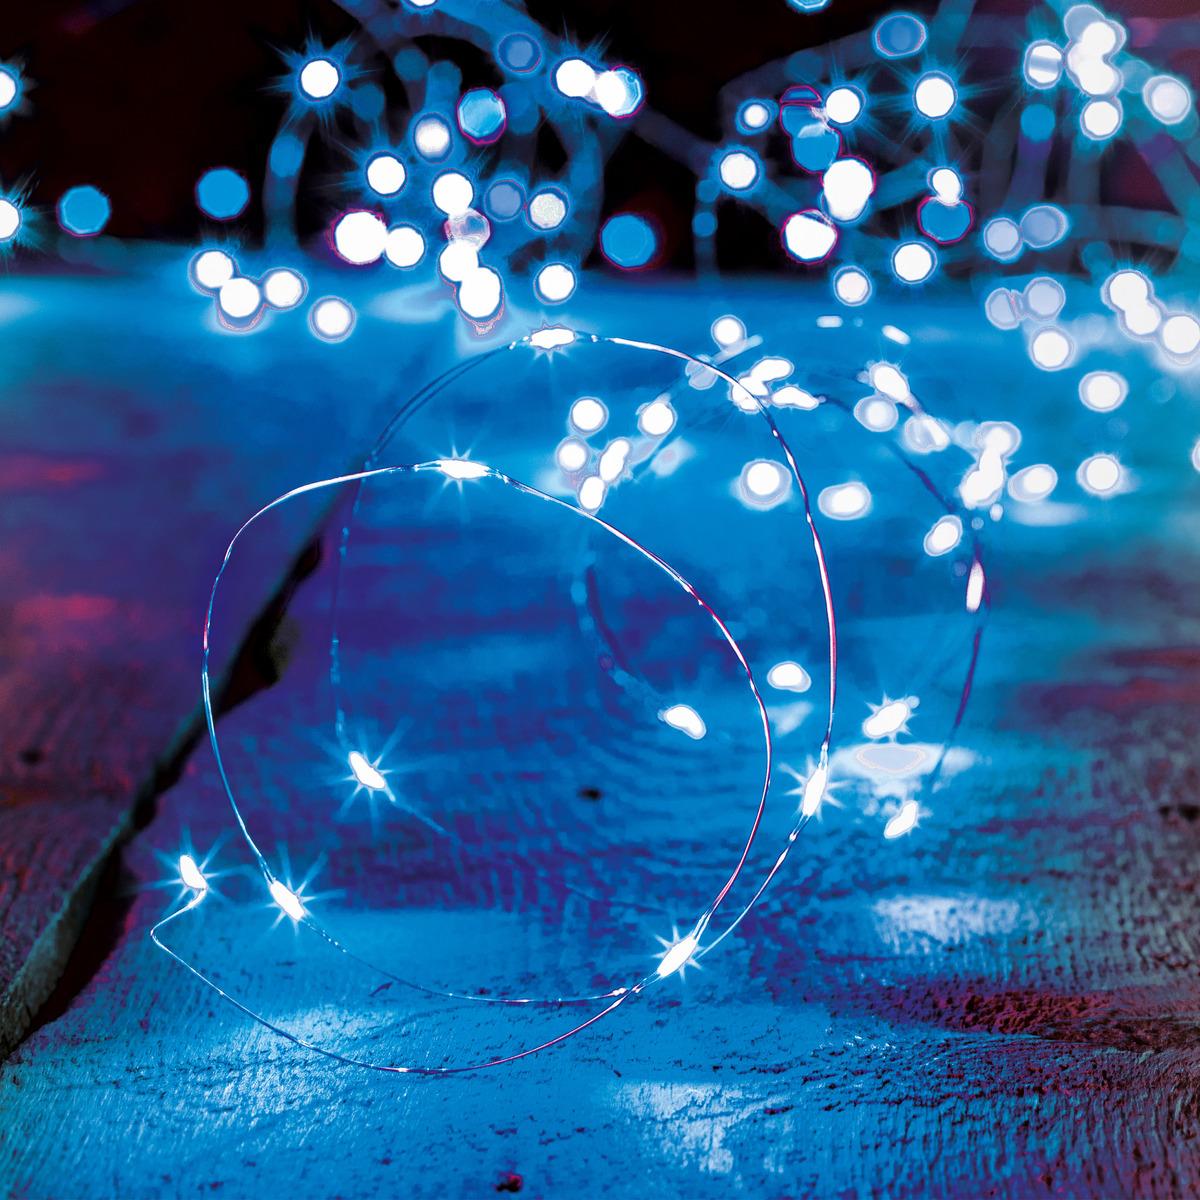 Guirlande lumineuse intérieur 2m bleu 20 LED à piles r les professionnels -  Decoration Brands